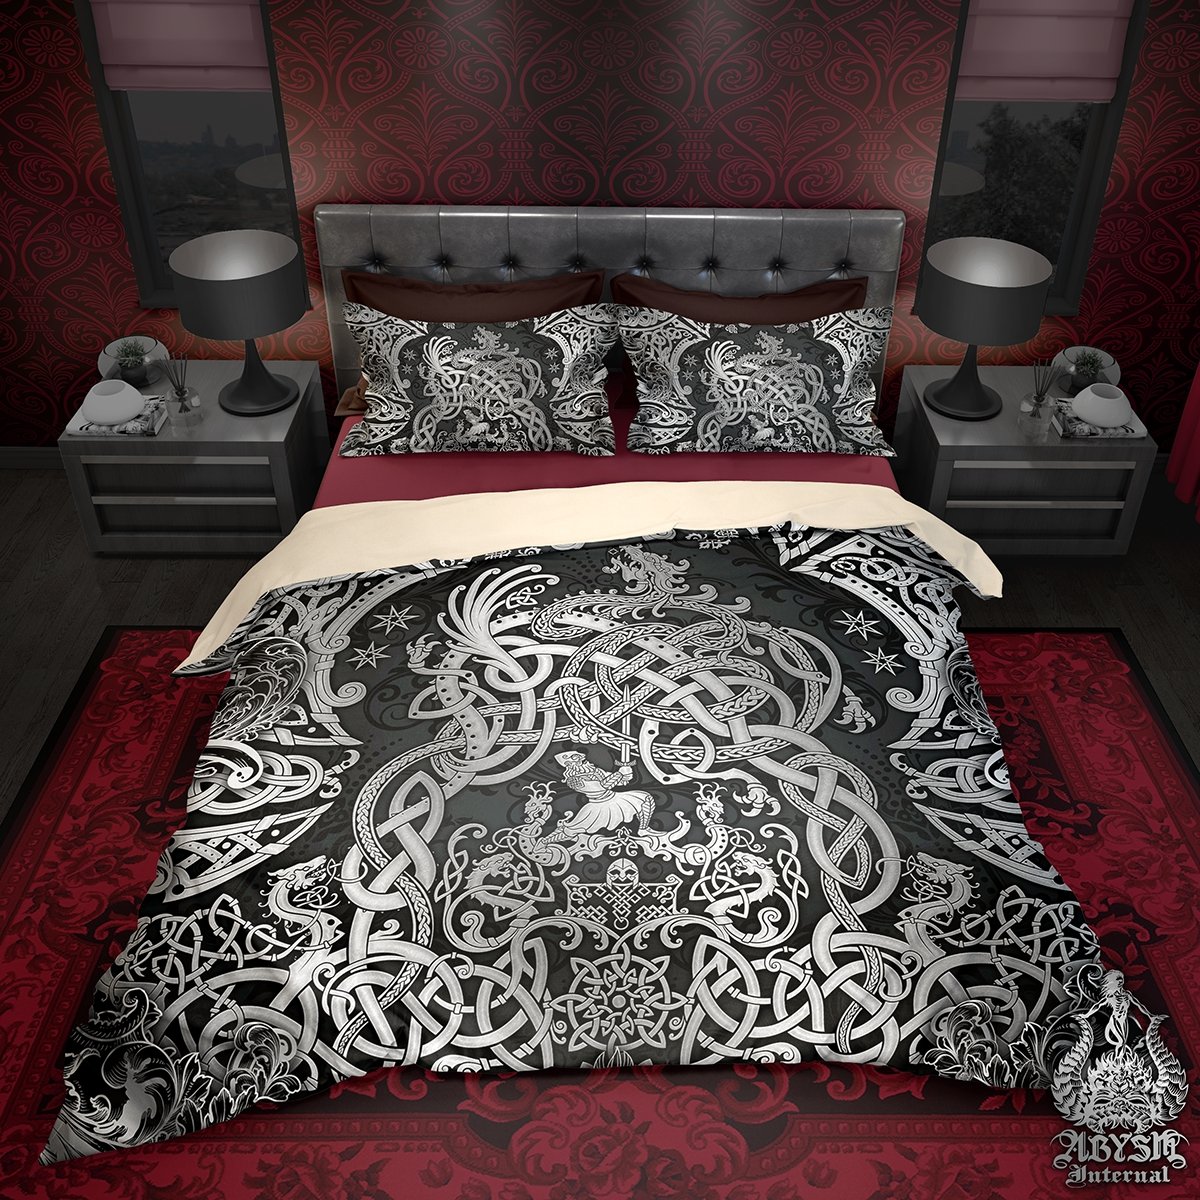 Thiết kế viking bedroom decor văn hóa Bắc Âu cho phòng ngủ của bạn